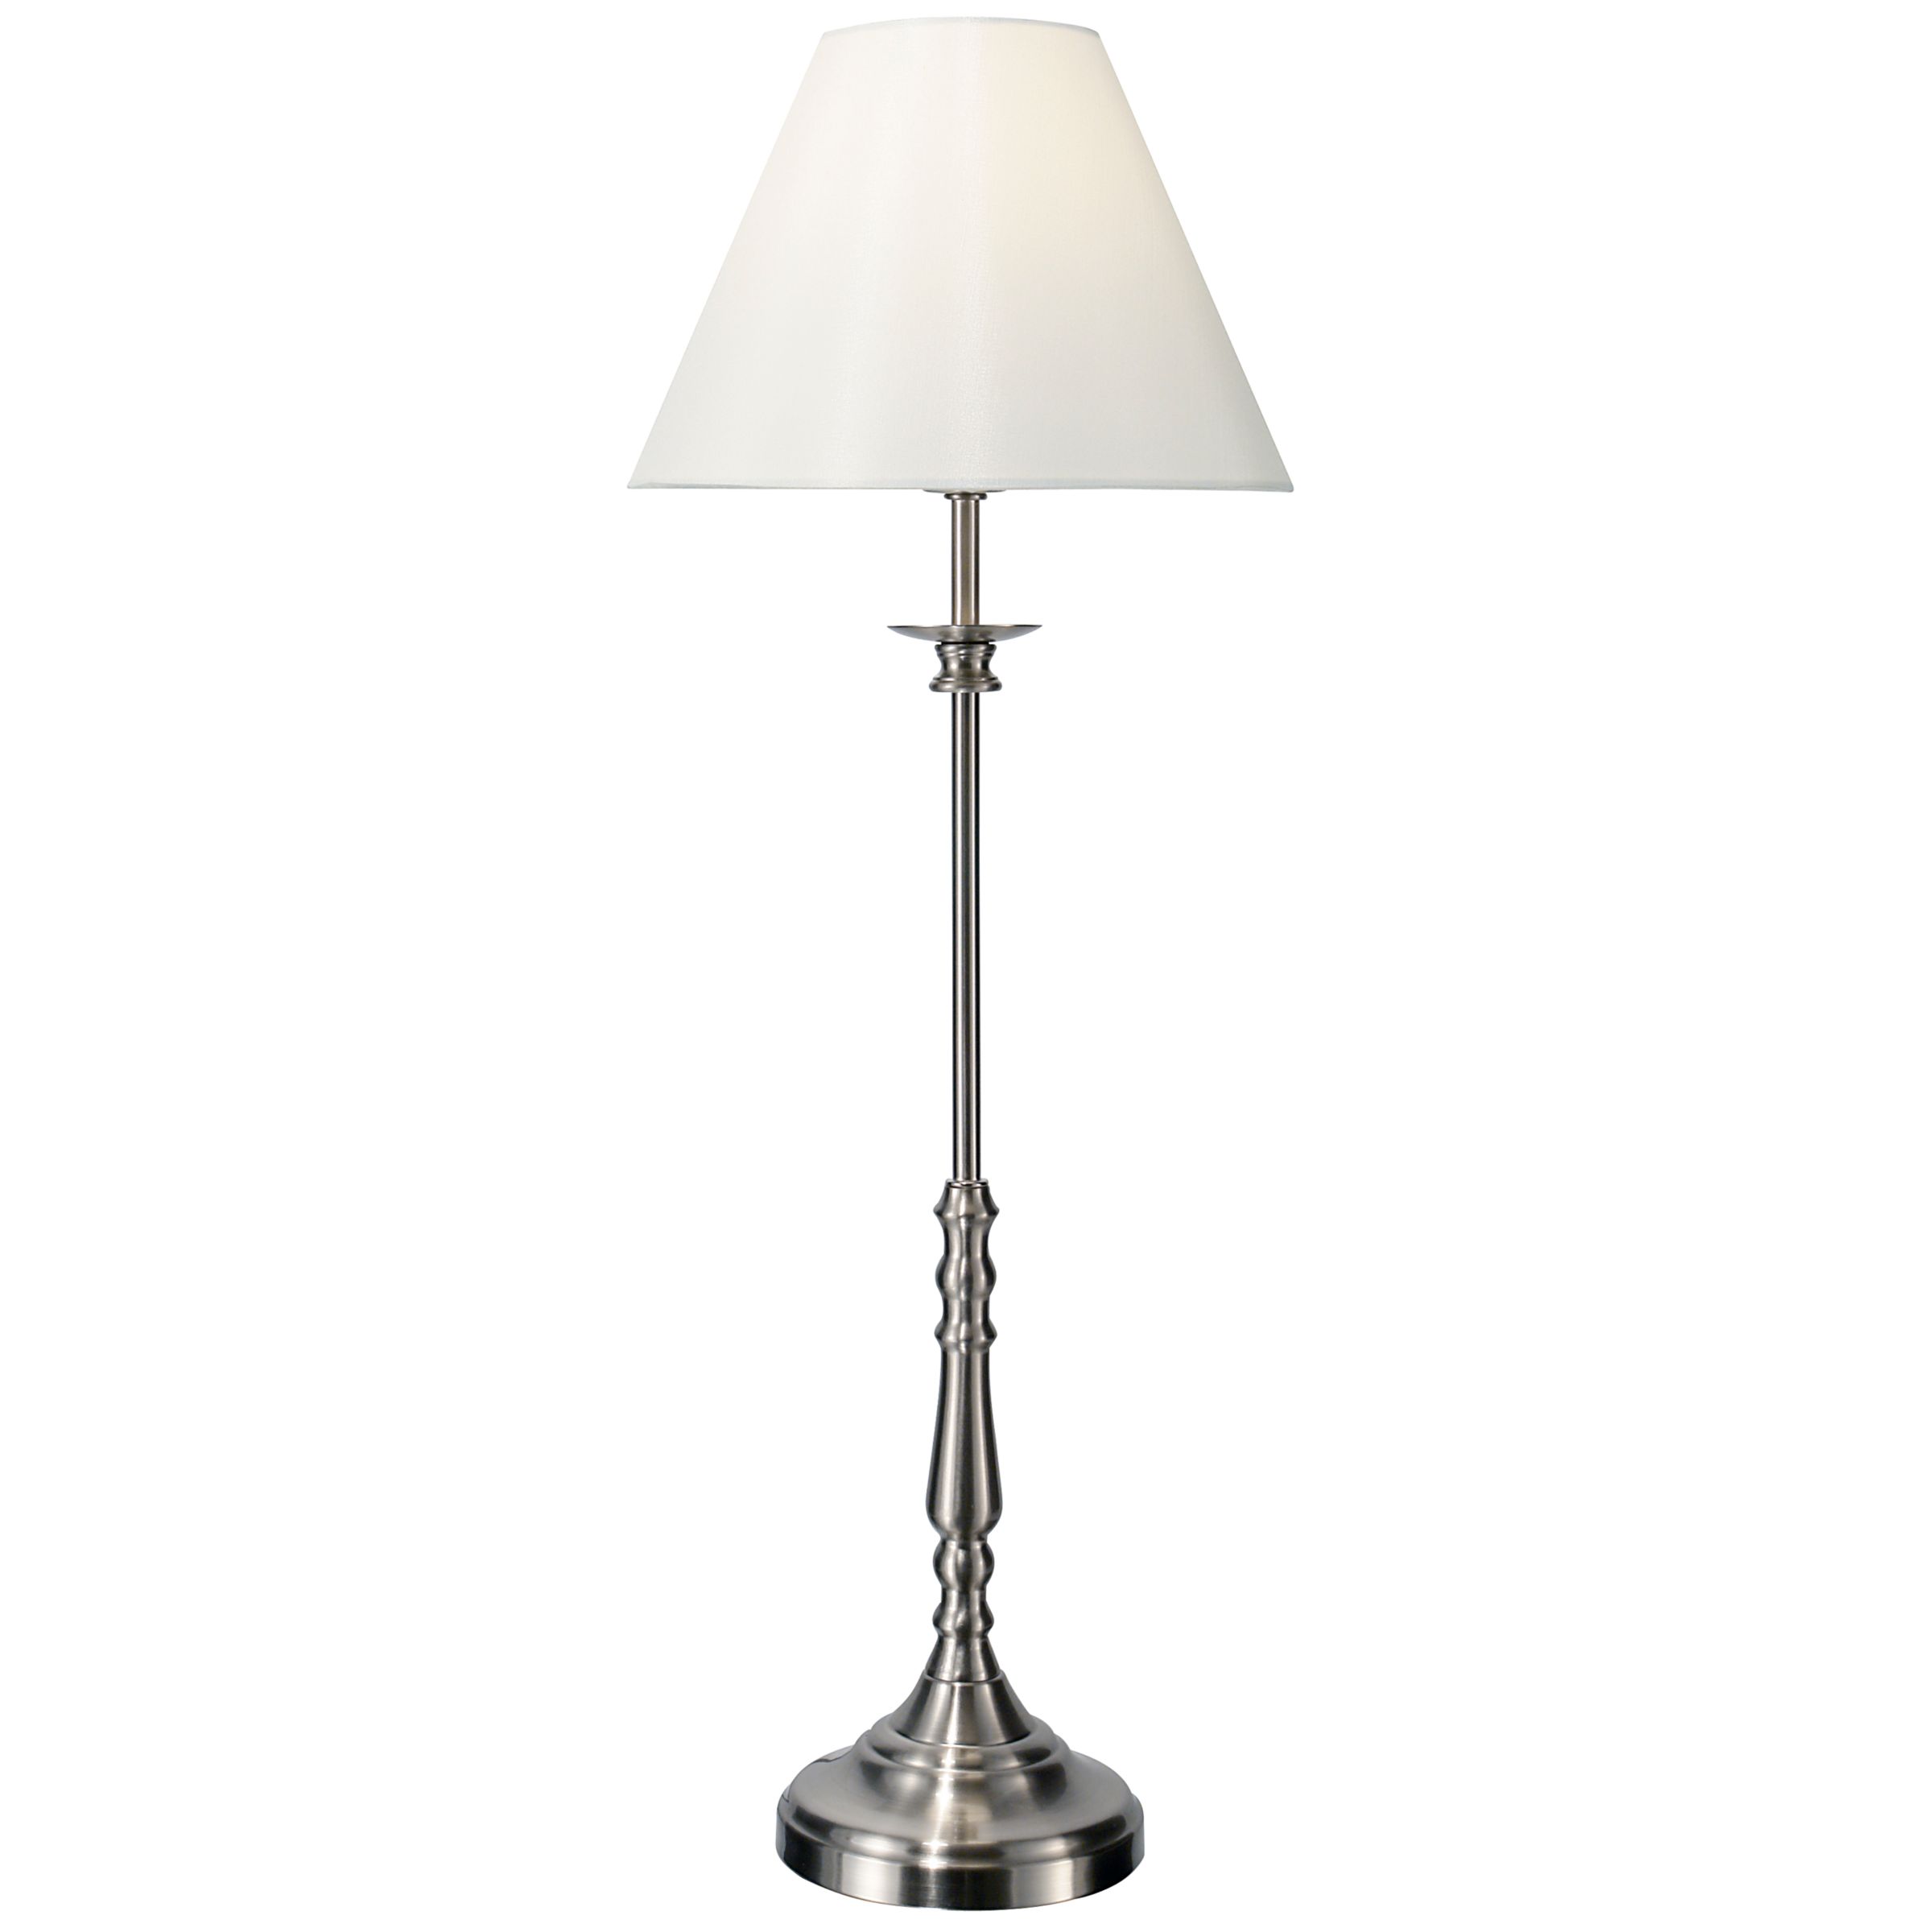 John Lewis Sloane Table Lamp, Nickel